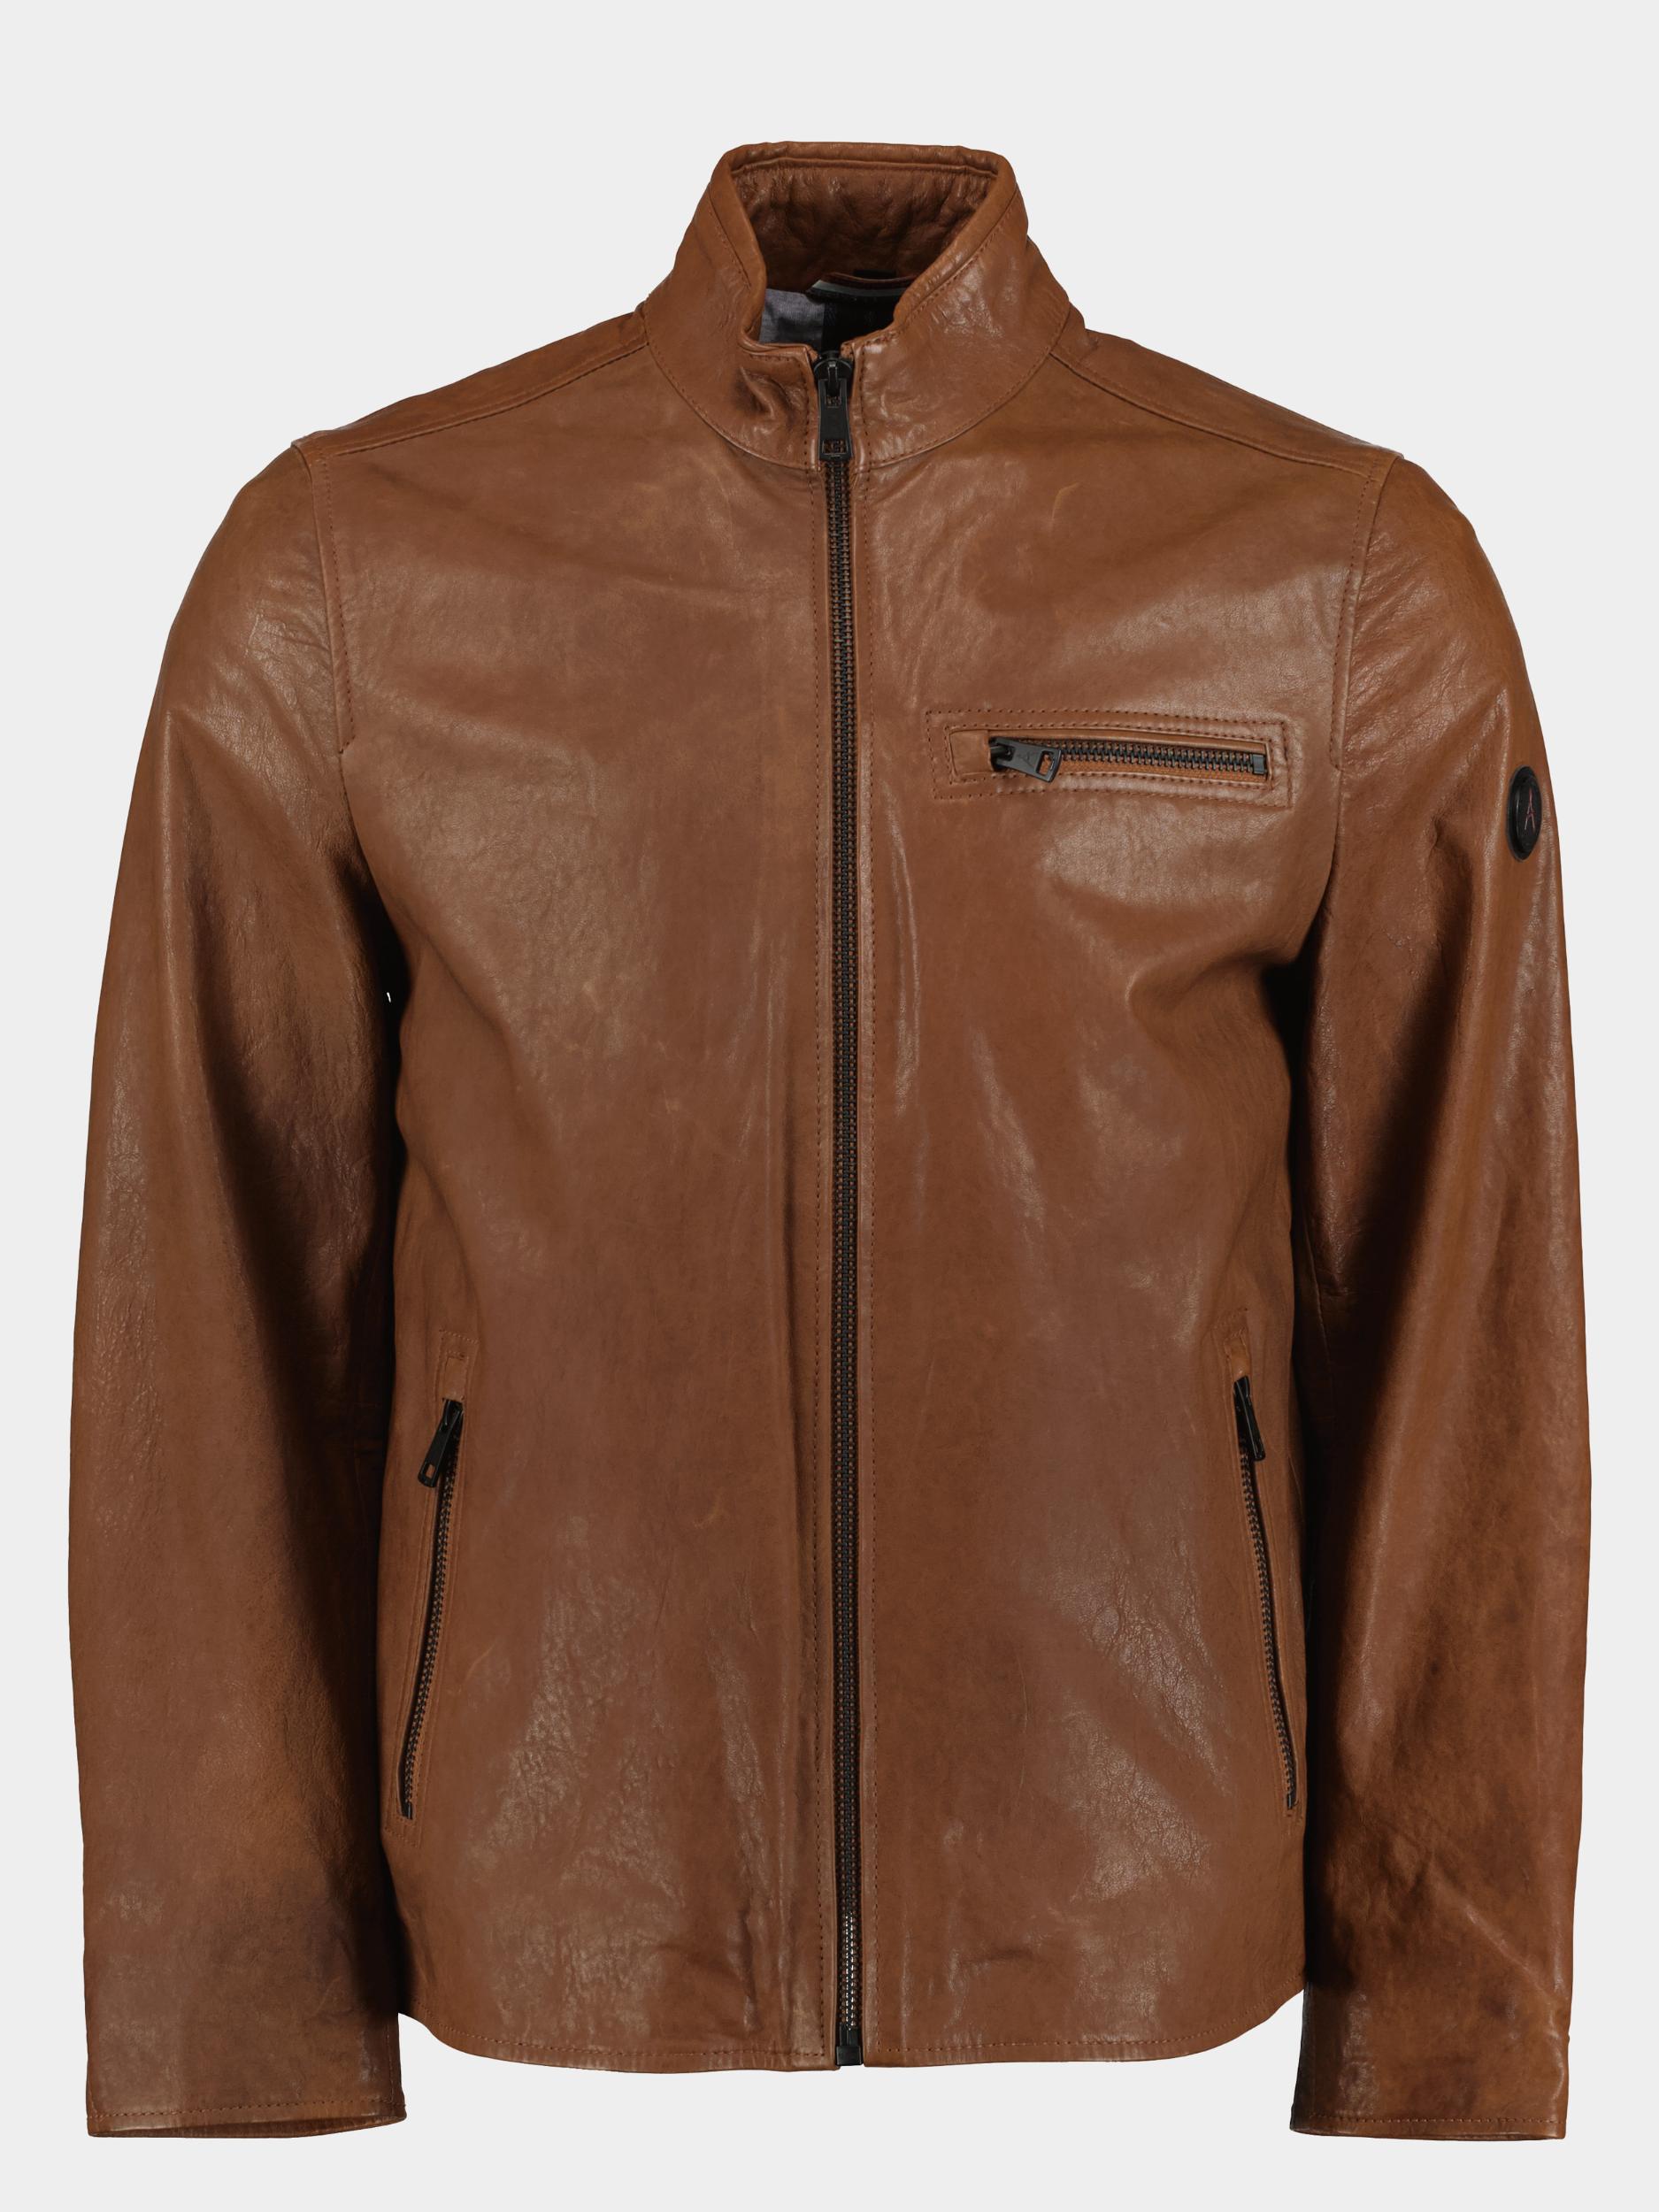 Afbeelding van Donders 1860 Lederen jack distrixx leather jacket 52382/461